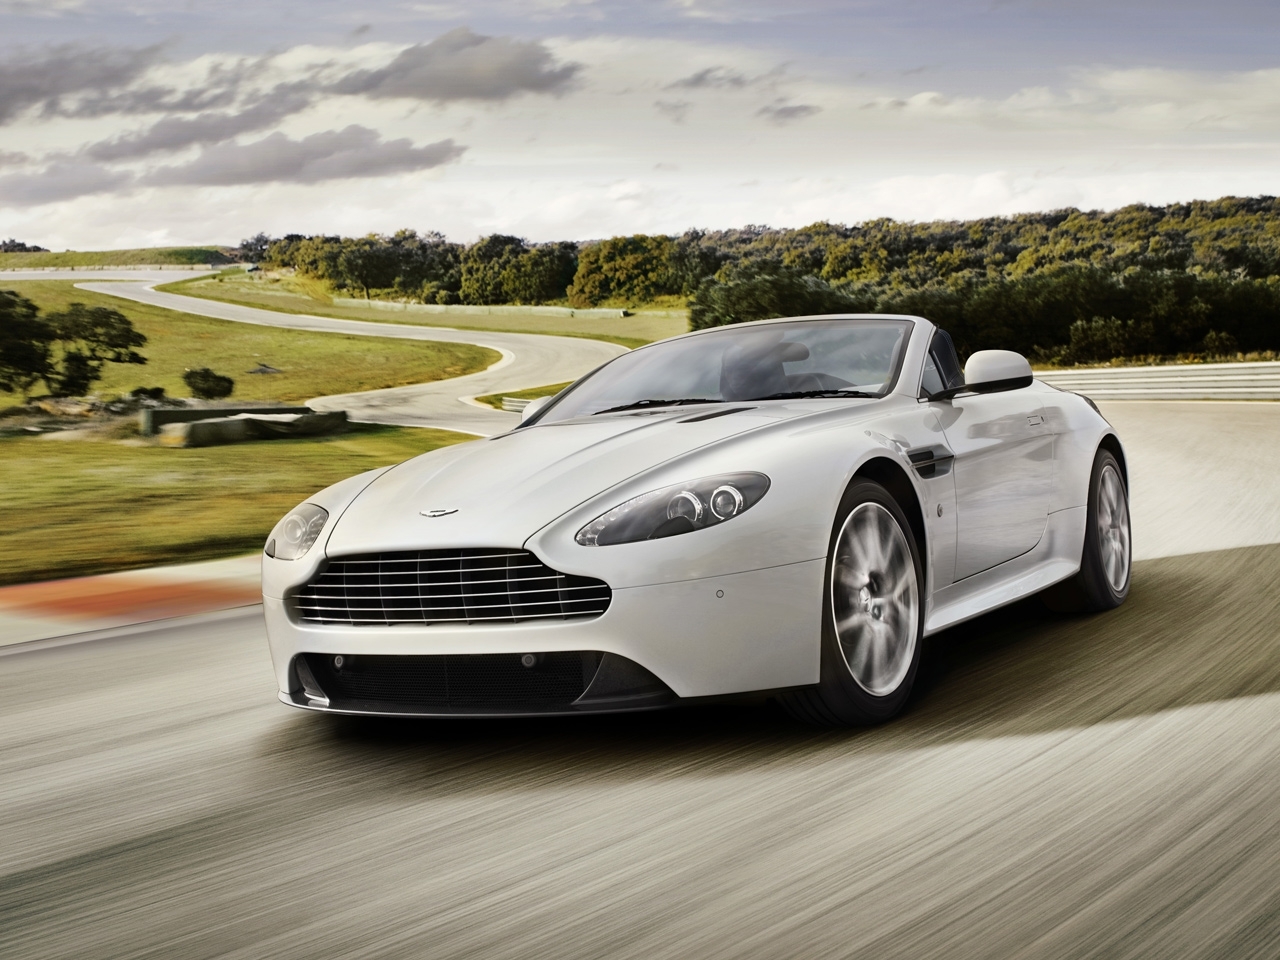 Скачать картинку Астон Мартин (Aston Martin), Машины, Транспорт в телефон бесплатно.